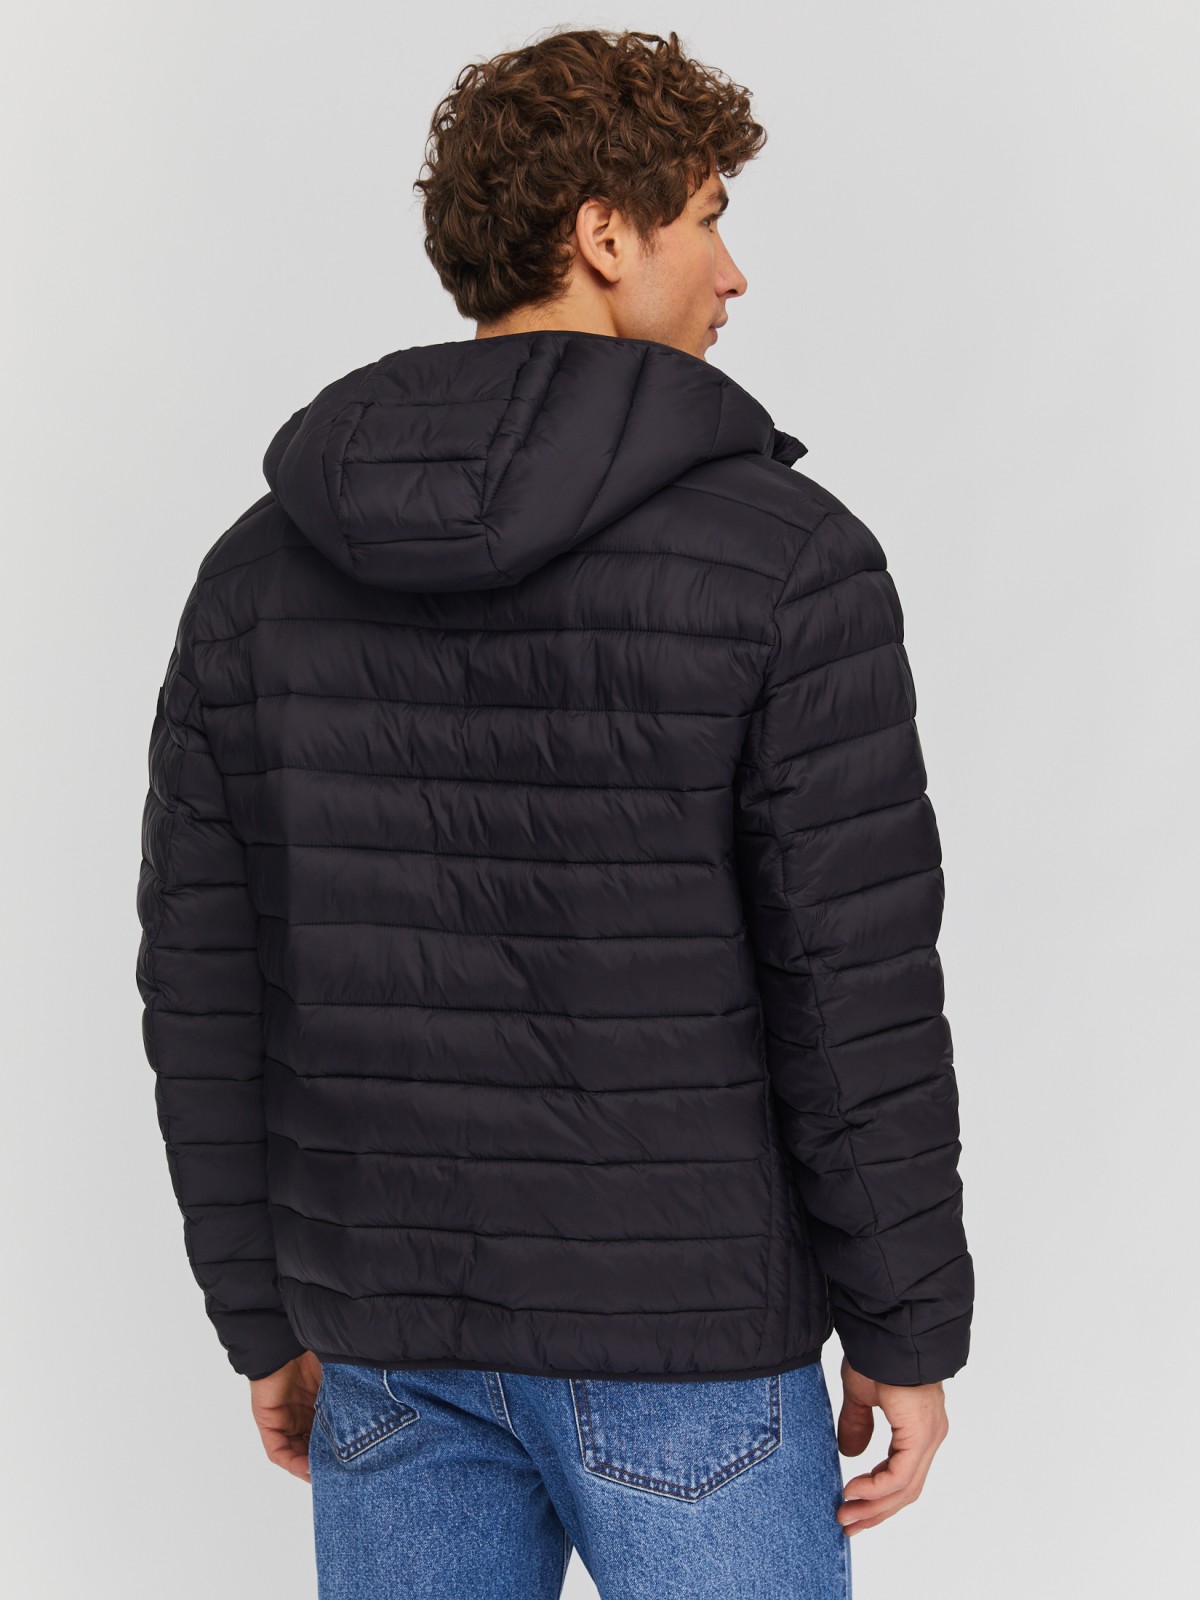 Лёгкая утеплённая стёганая куртка на молнии с капюшоном zolla 01412512N074, цвет черный, размер S - фото 6